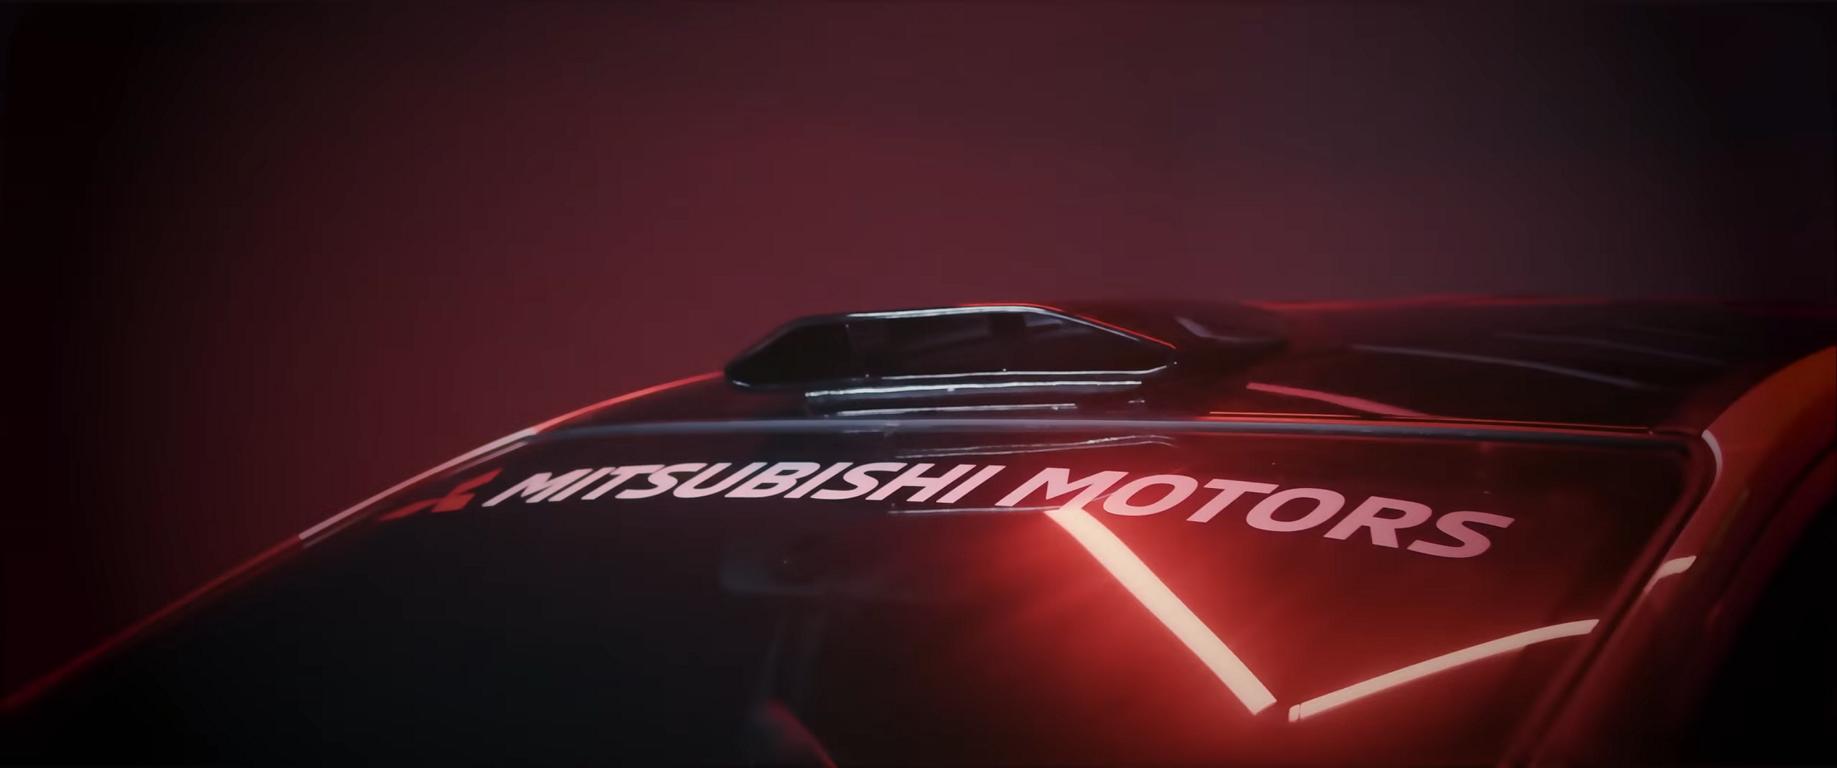 Mitsubishi XPander By Speedline Unikat 2022 Tuning 4